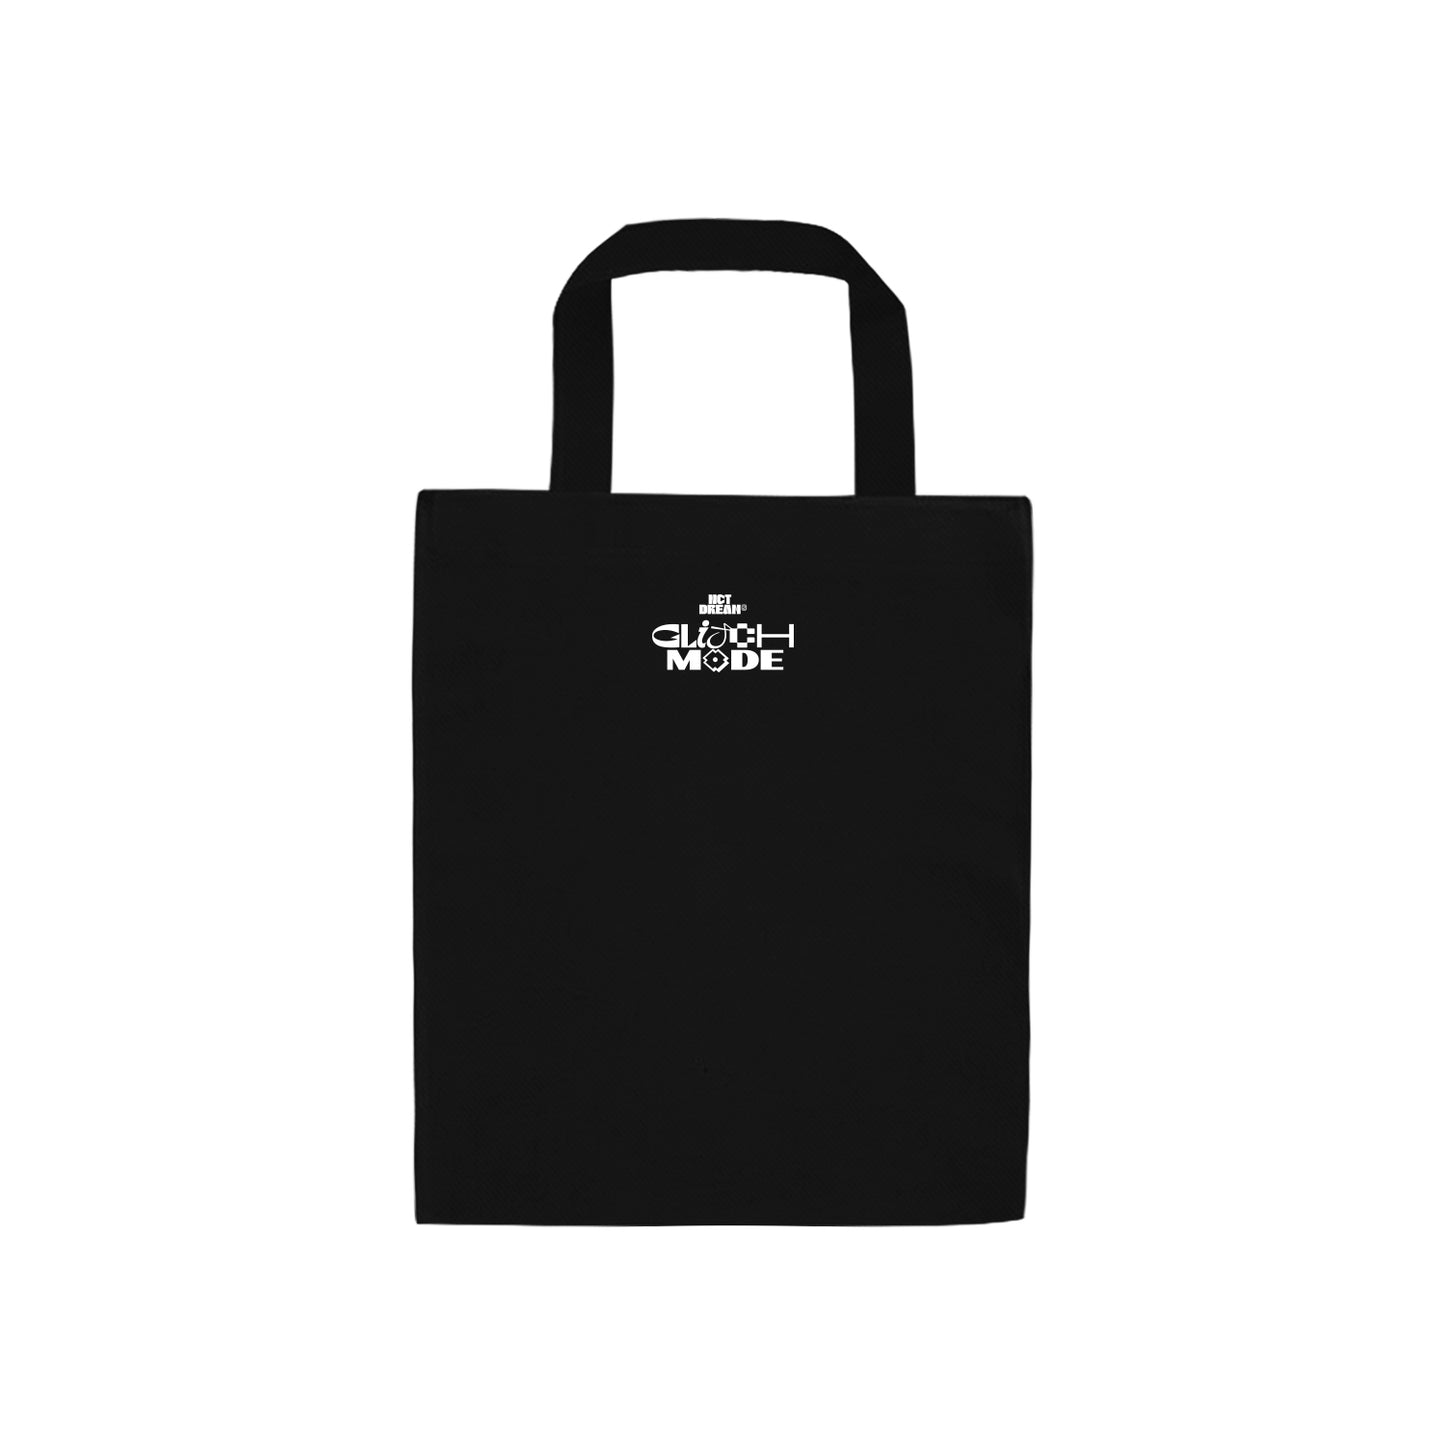 NCT DREAM 'Glitch Mode' Tote Bag Deluxe Box